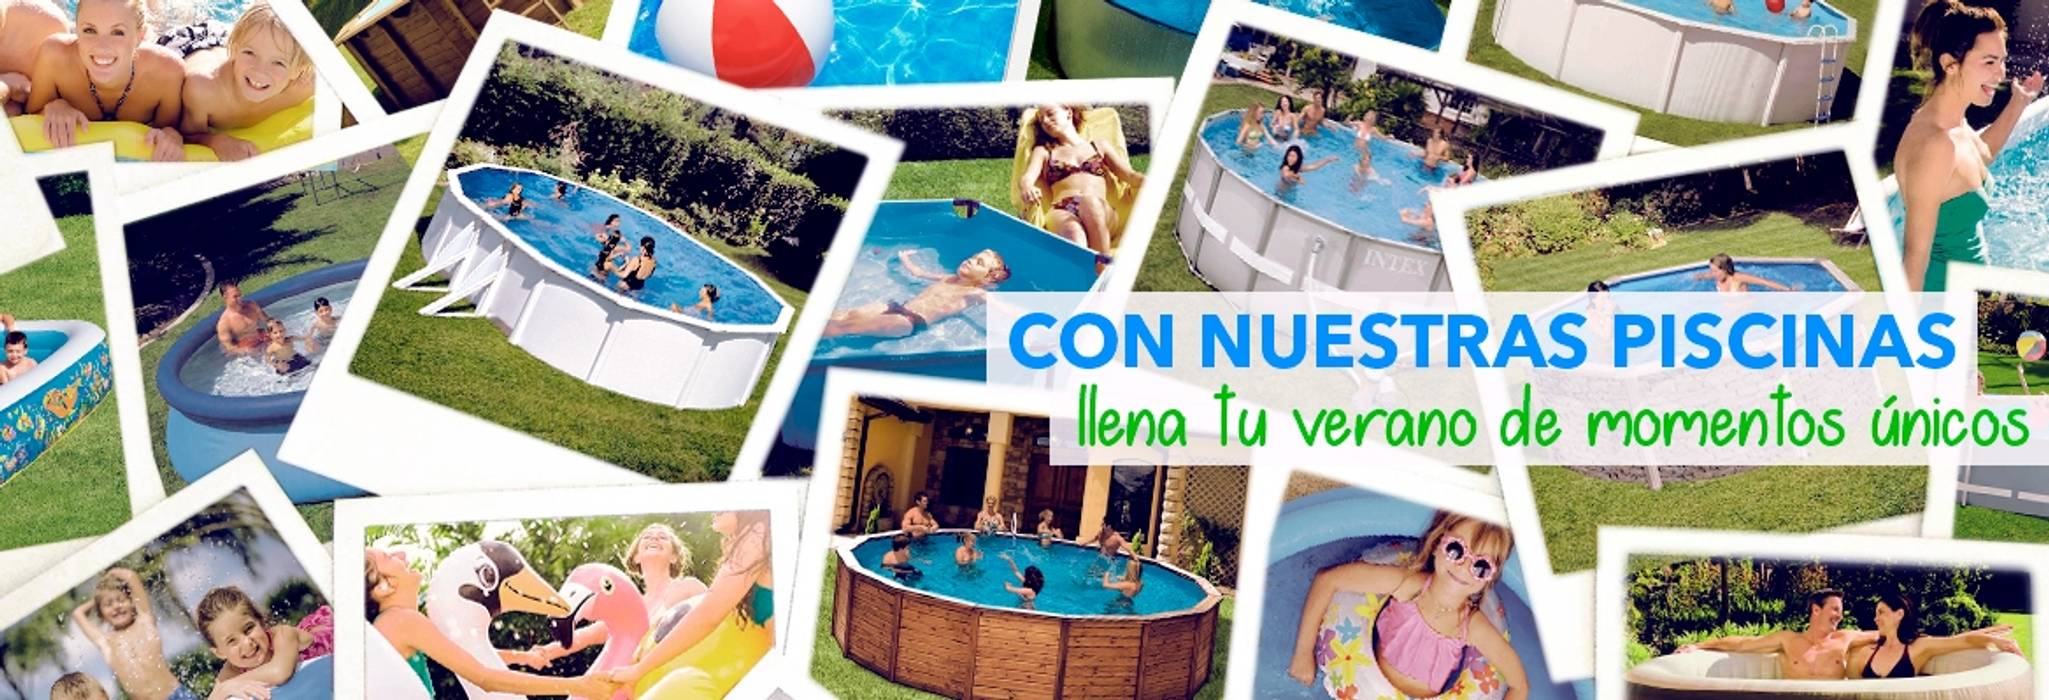 Comprar piscinas de acero desmontables Barcelona, Outlet Piscinas Outlet Piscinas Garden Pool Aluminium/Zinc